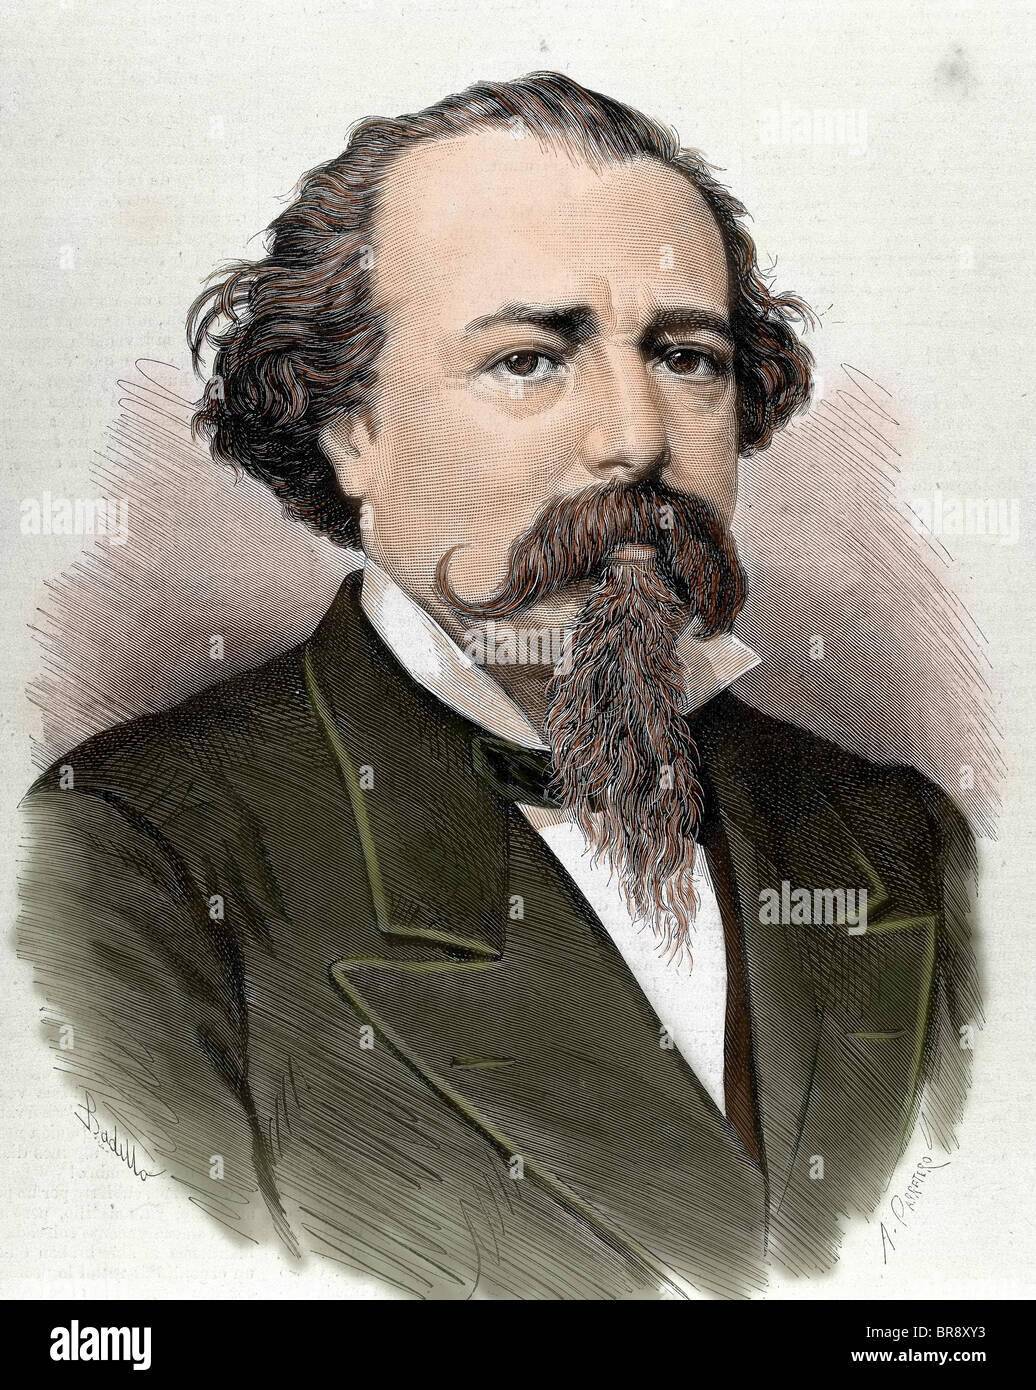 López de Ayala, Adelardo (1828-1879). Poète, dramaturge et homme politique espagnol. Gravure couleur de 1879. Banque D'Images